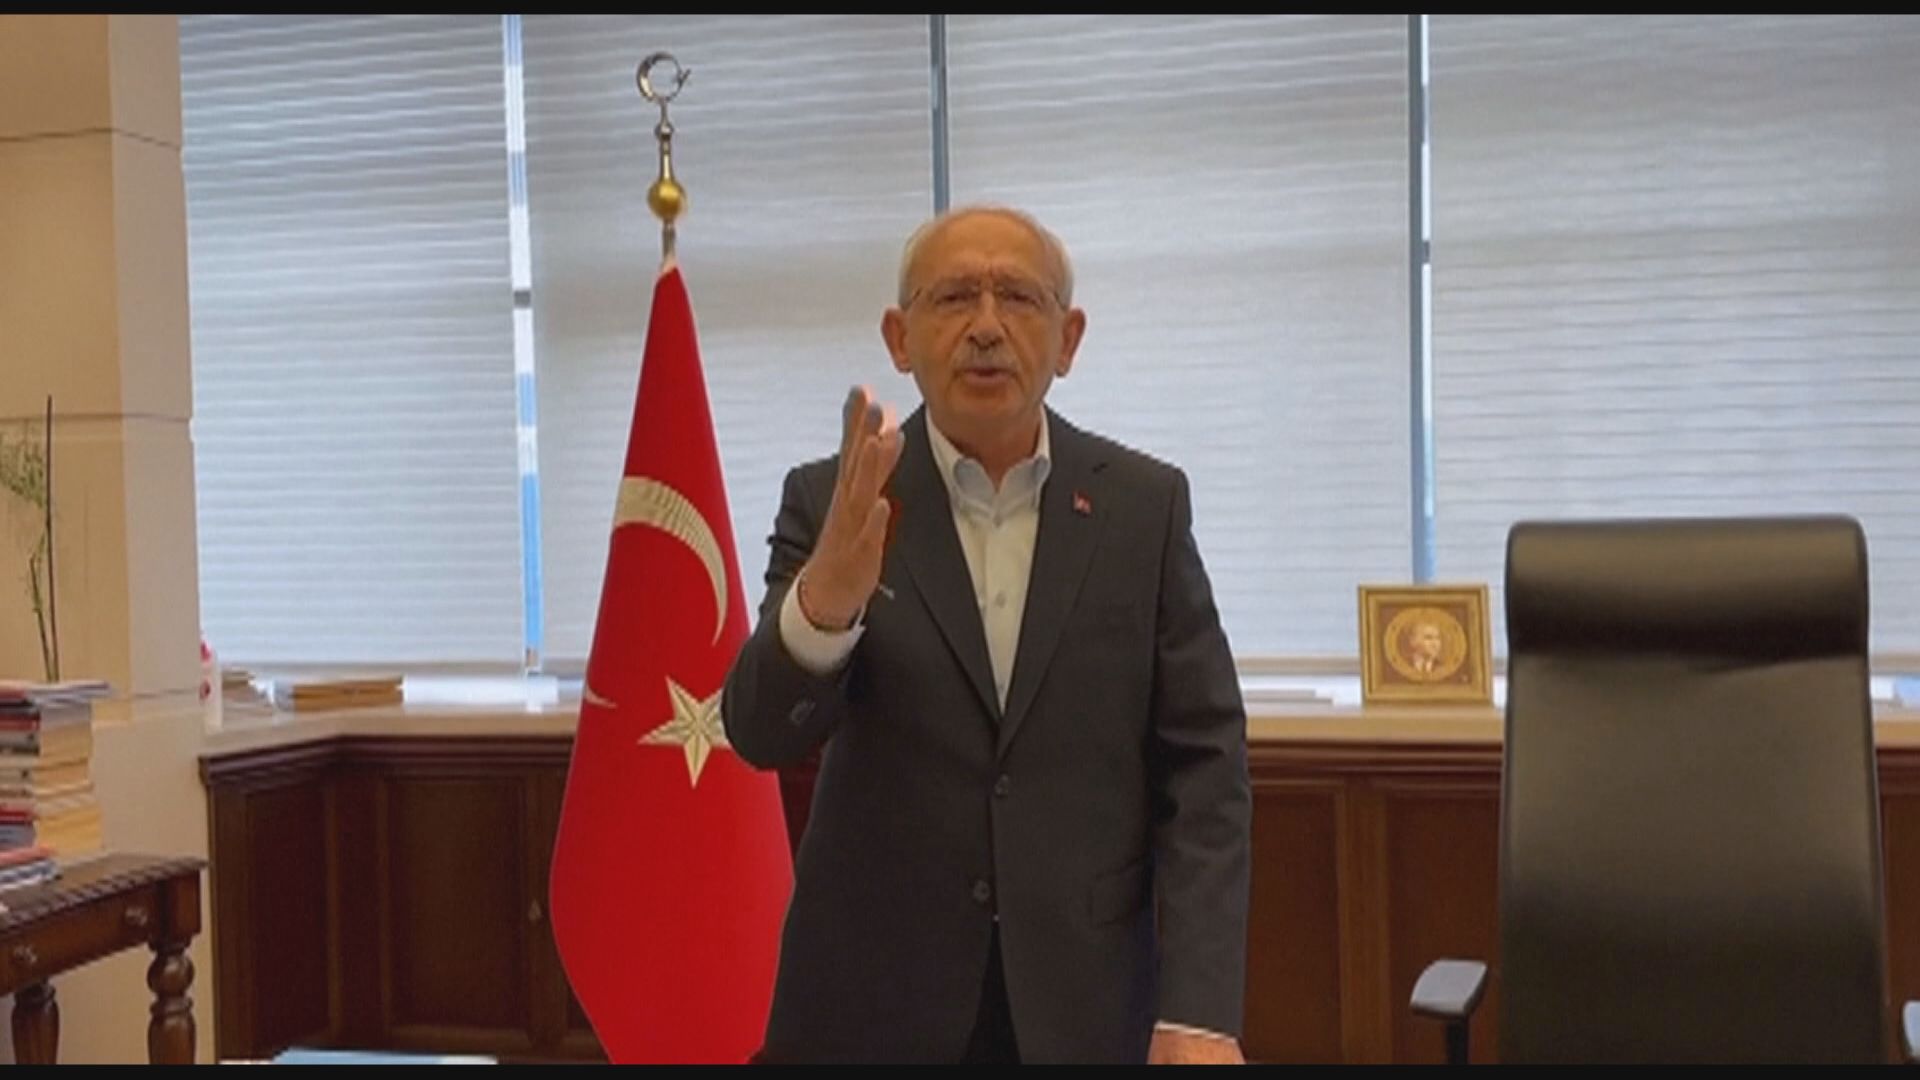 土耳其大選 科勒馳達奧盧強化反移民立場爭保守派支持